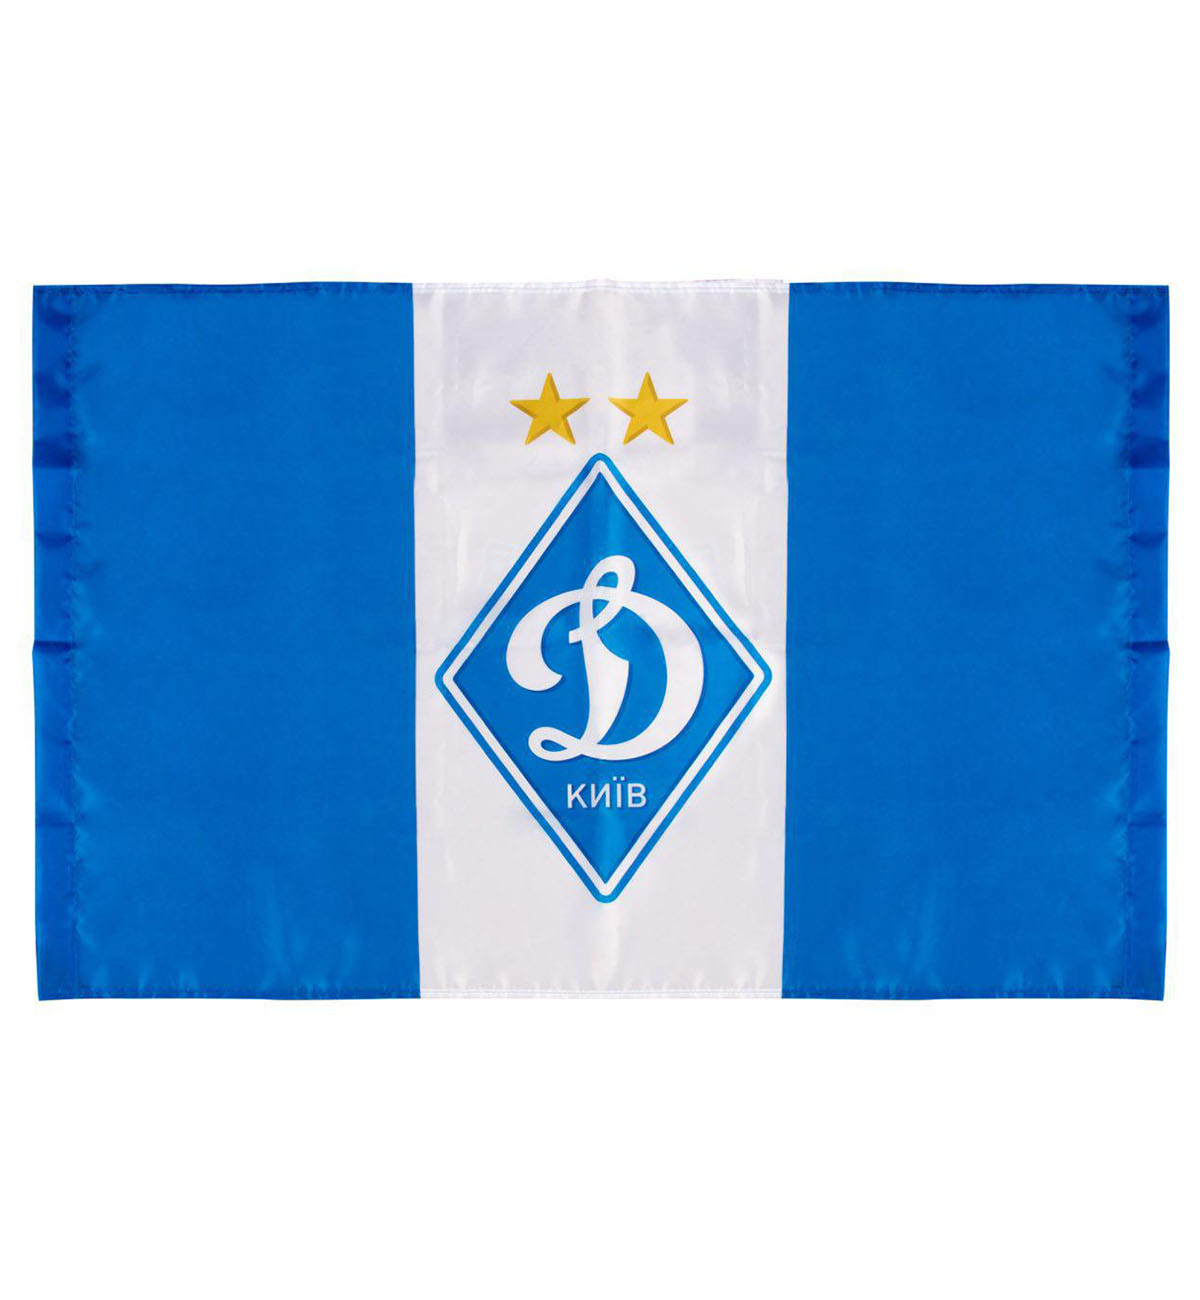 Dynamo Kyiv flag